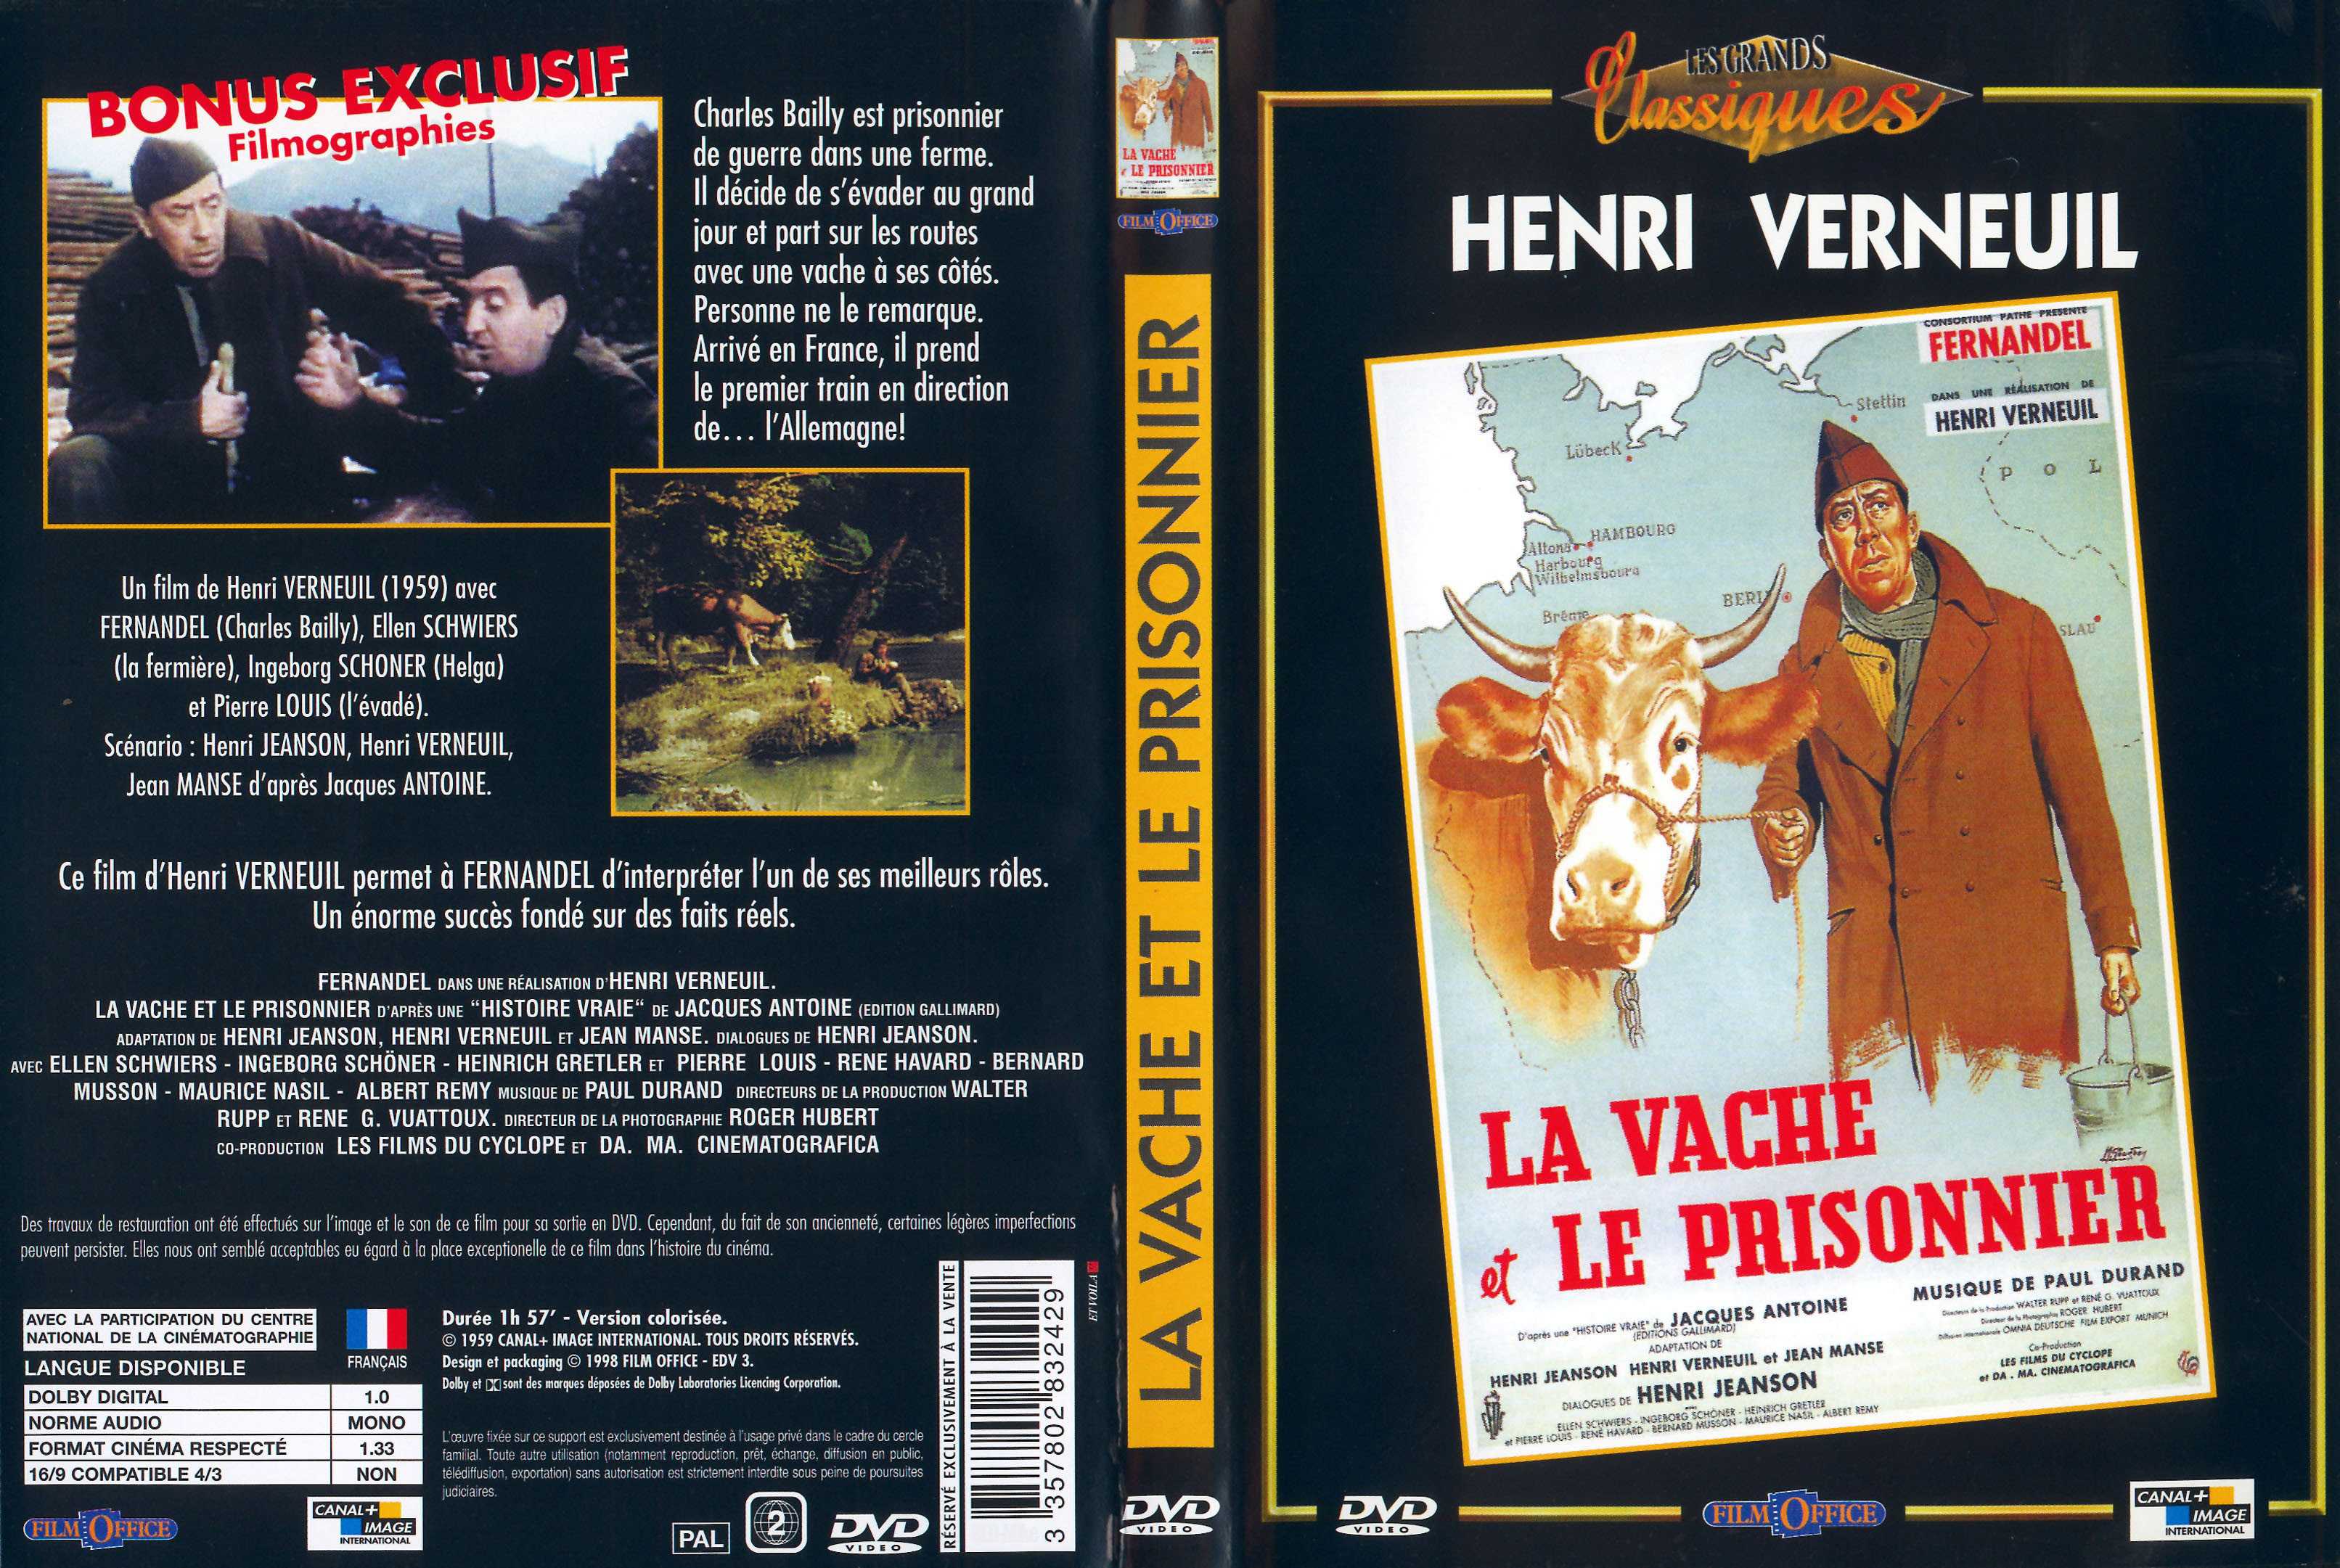 Jaquette DVD La vache et le prisonnier v2